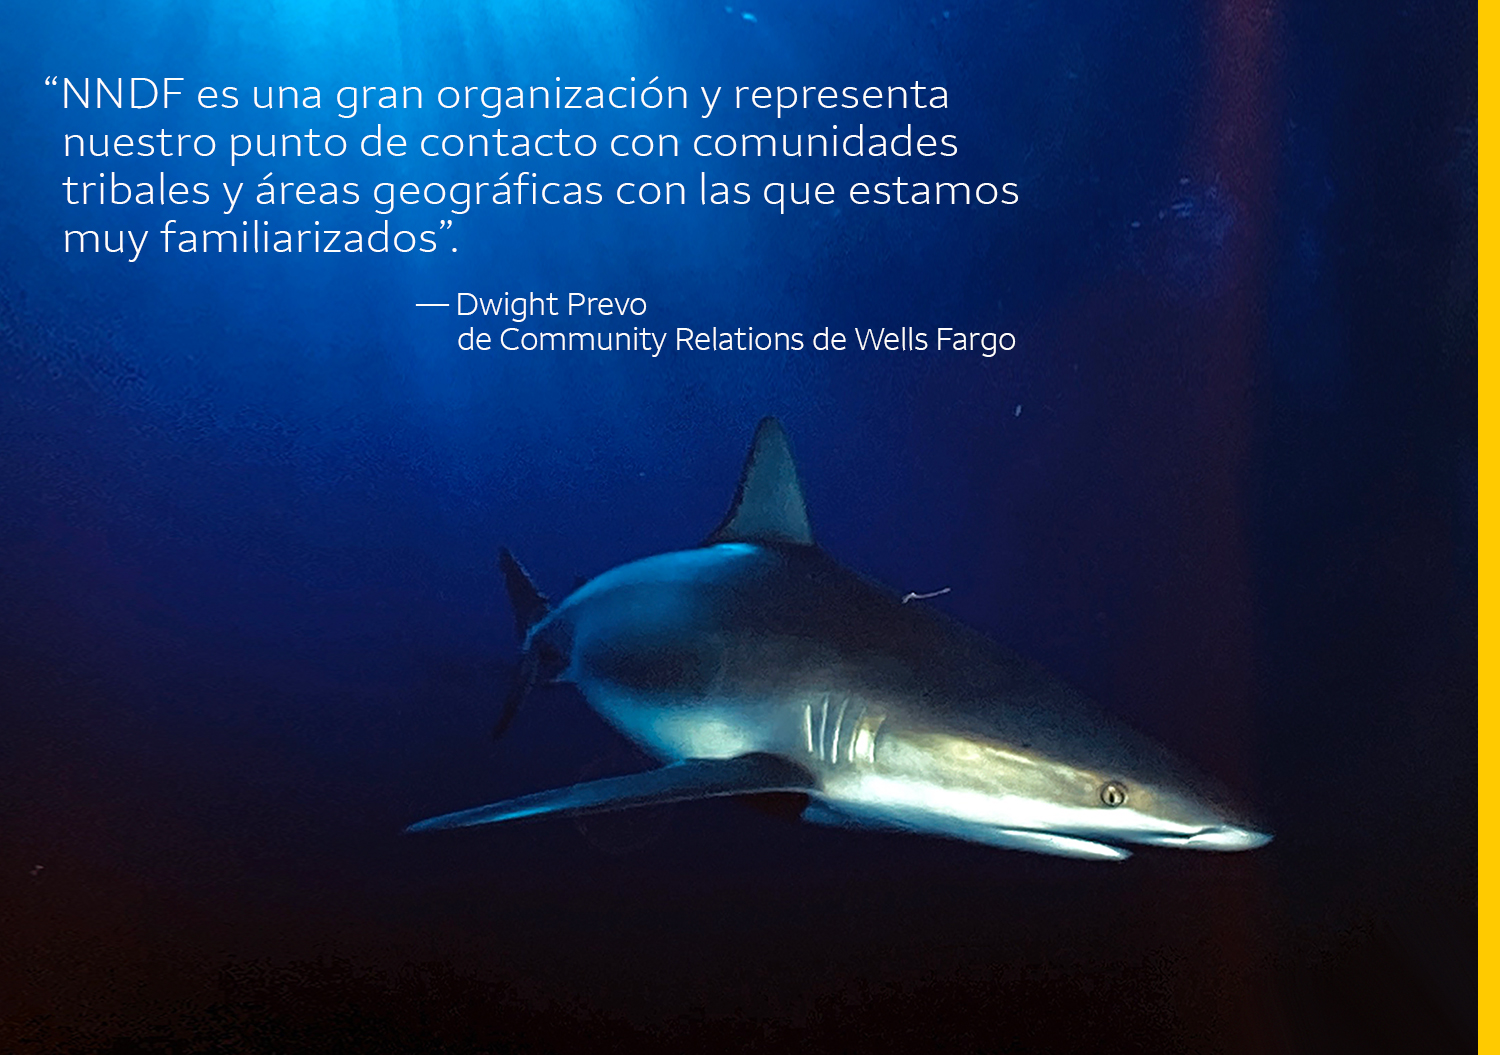  Una foto de un tiburón debajo del agua tiene la siguiente cita: “NNDF es una gran organización y representa nuestro punto de contacto con comunidades tribales y áreas geográficas con las que estamos muy familiarizados”. — Dwight Prevo, Community Relations de Wells Fargo